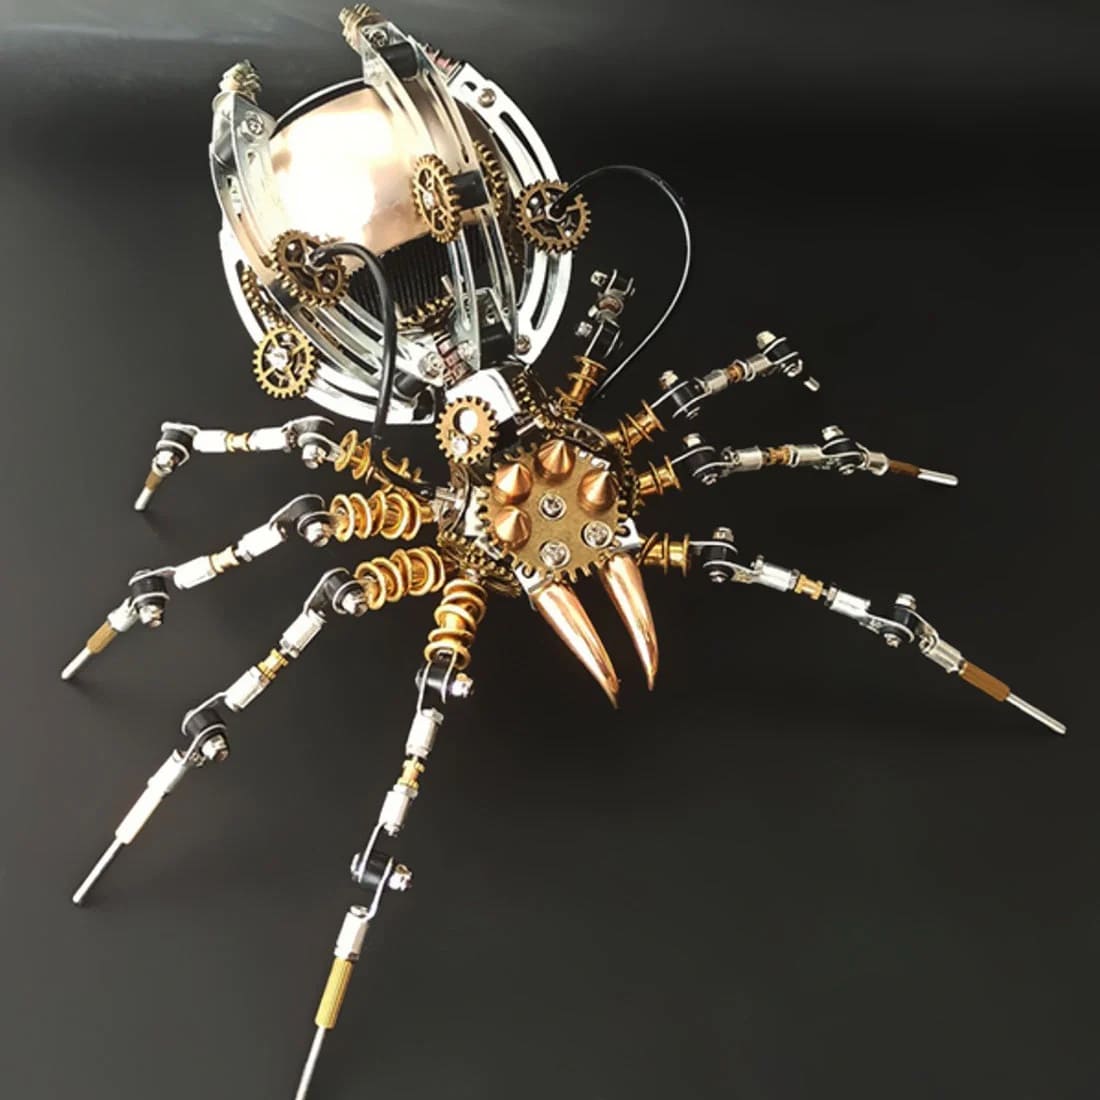 Modelo de aranha 3D + alto-falante bluetooth